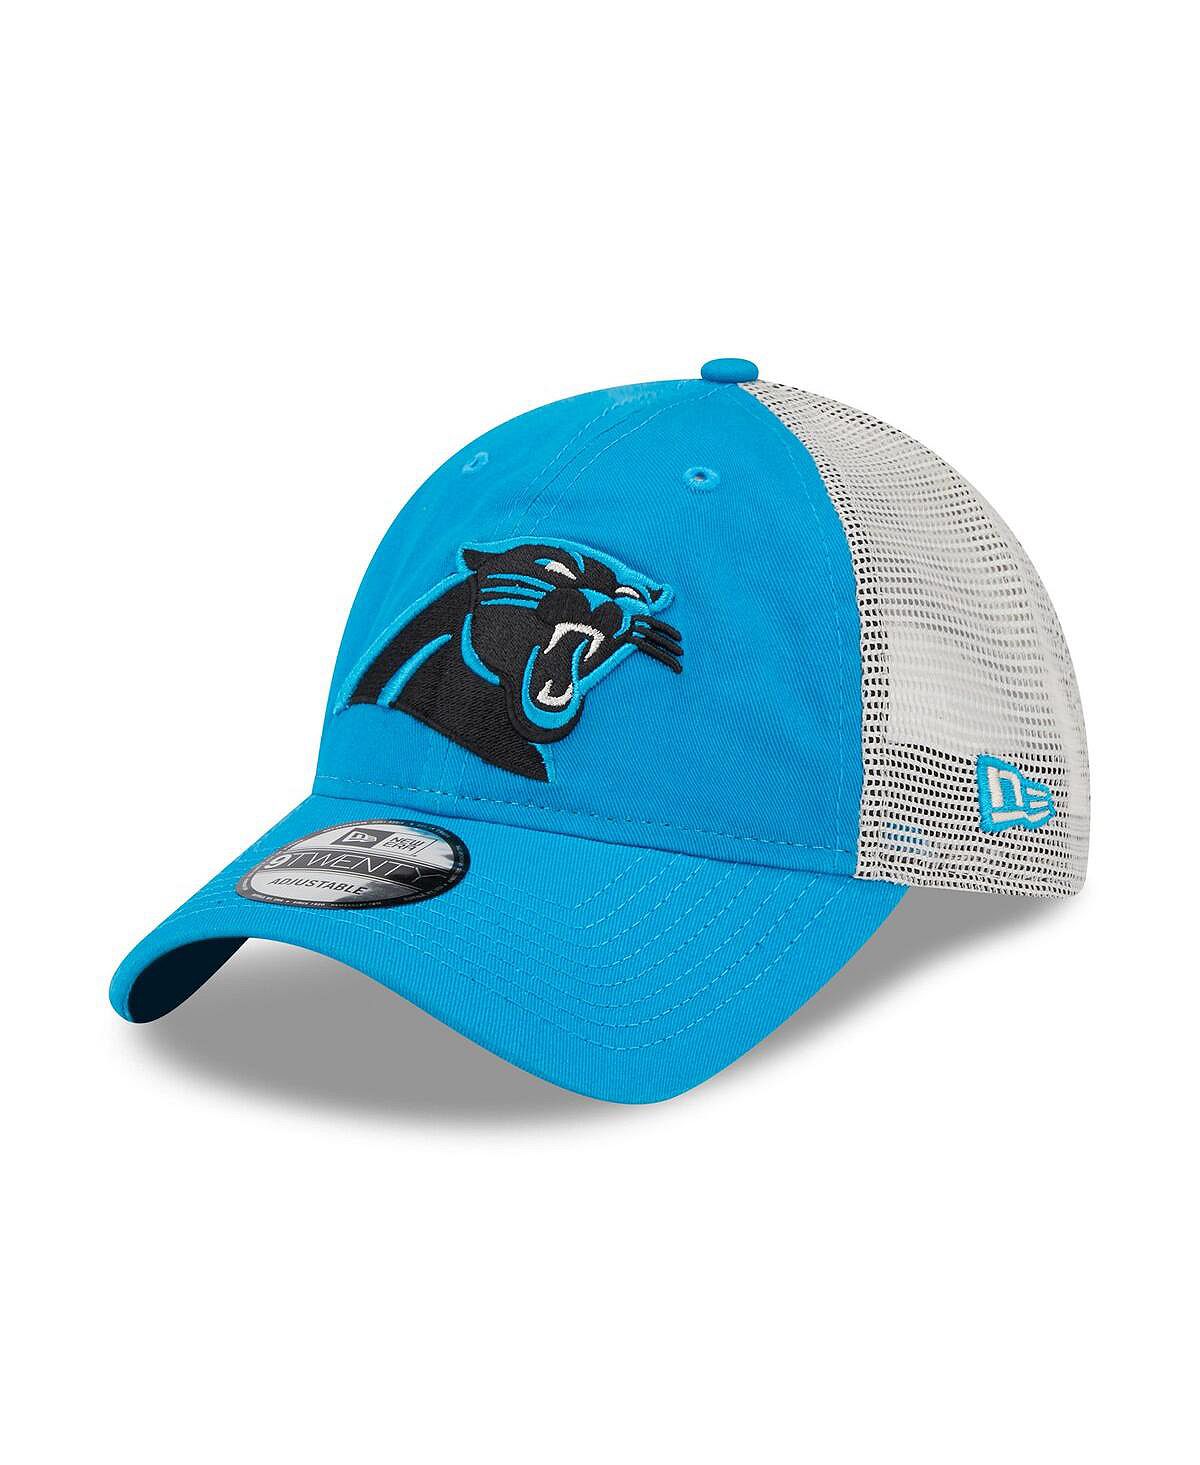 Мужская синяя натуральная кепка Carolina Panthers Loyal 9TWENTY Trucker Snapback New Era